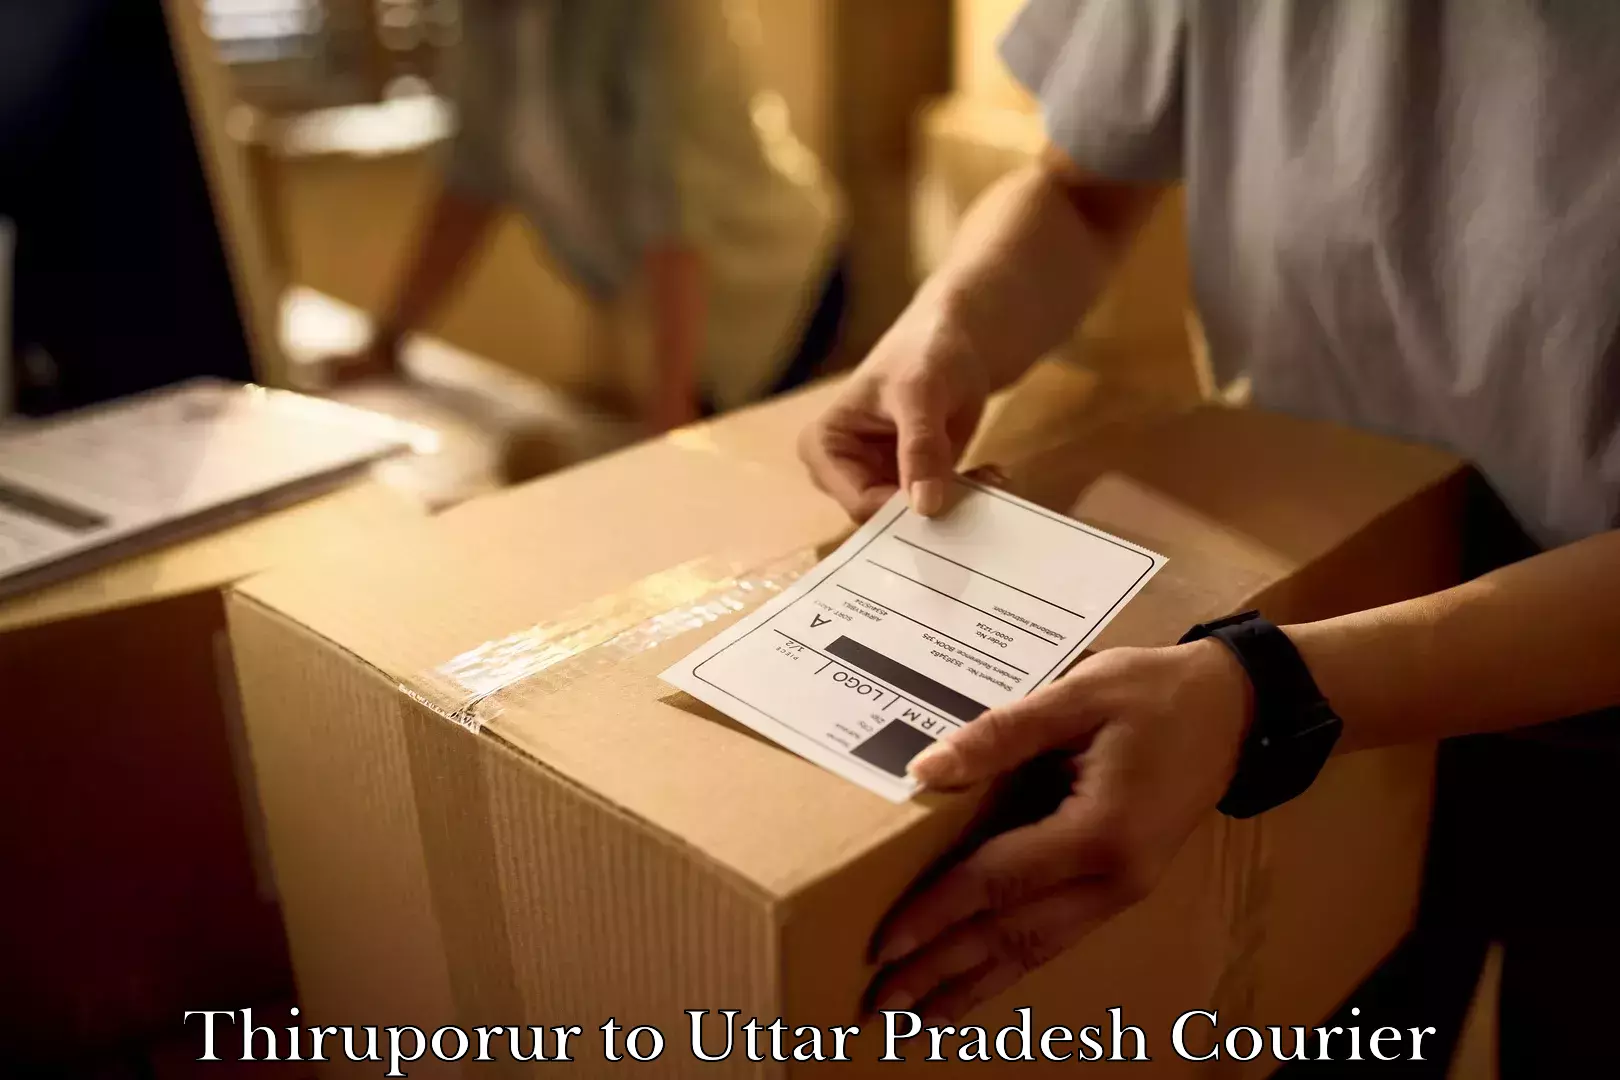 Furniture moving experts Thiruporur to Bhadohi